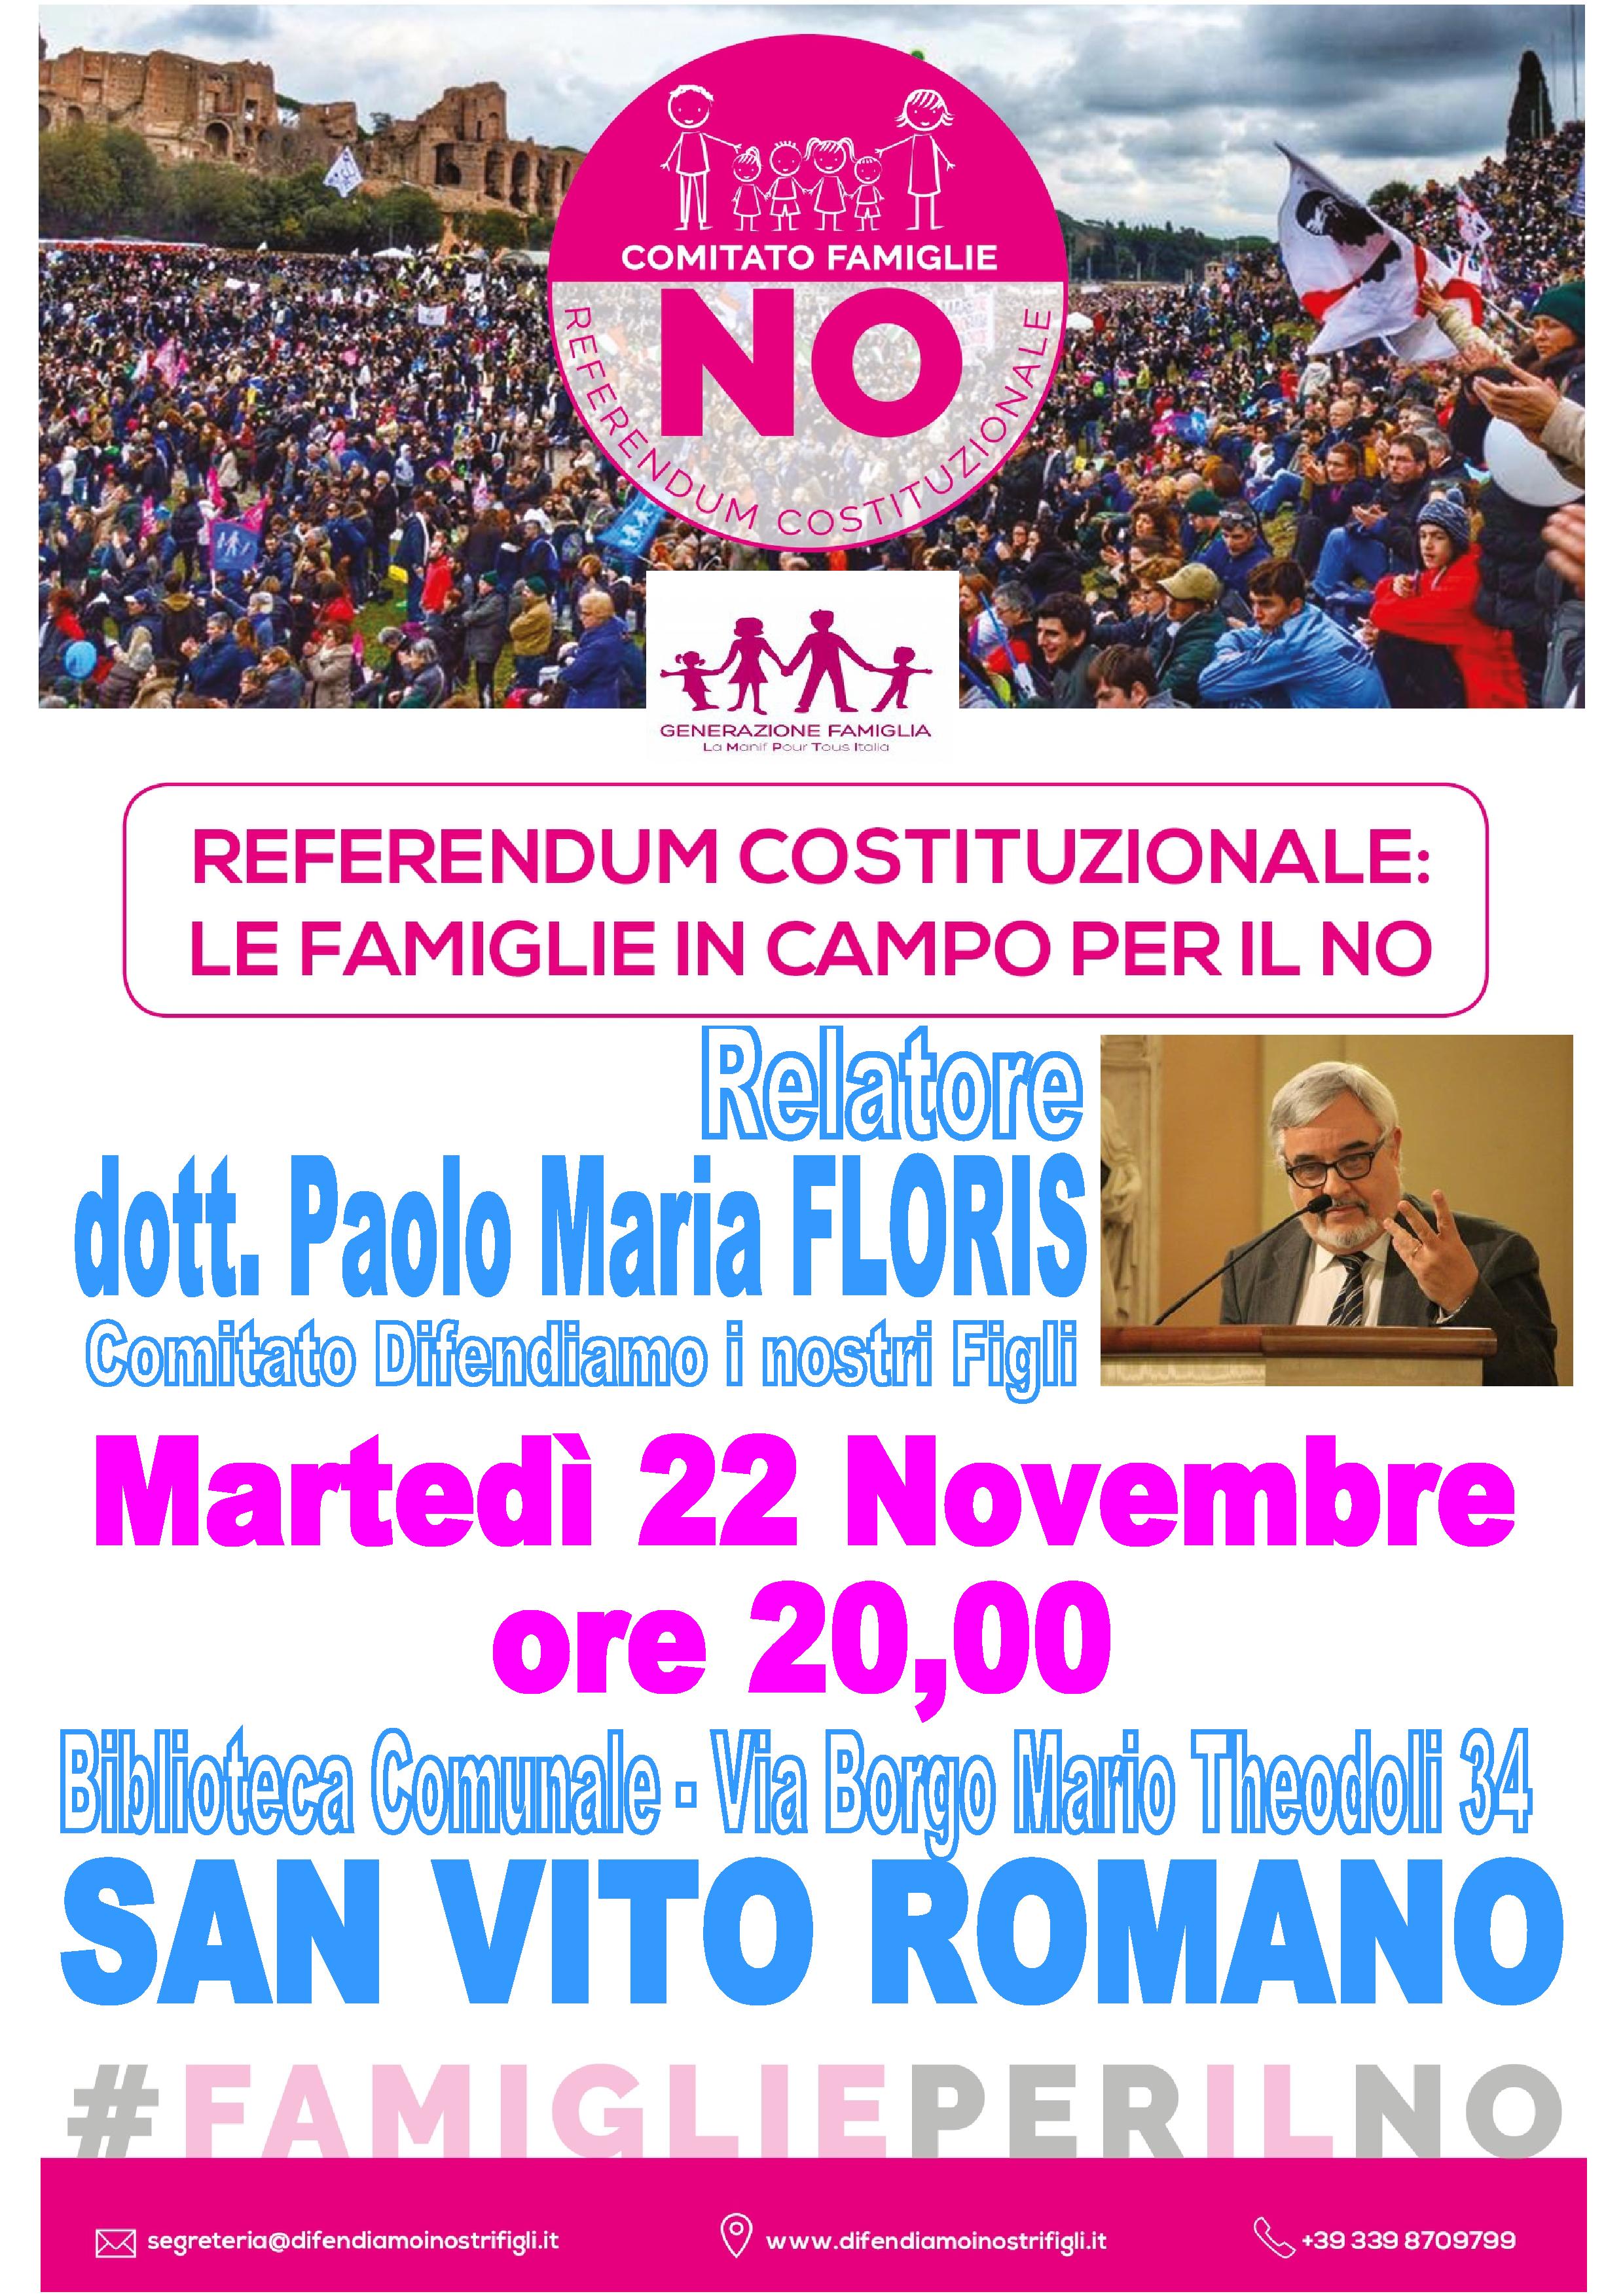 San Vito Romano (RM) – Referendum Costituzionale: le famiglie in campo per il no.